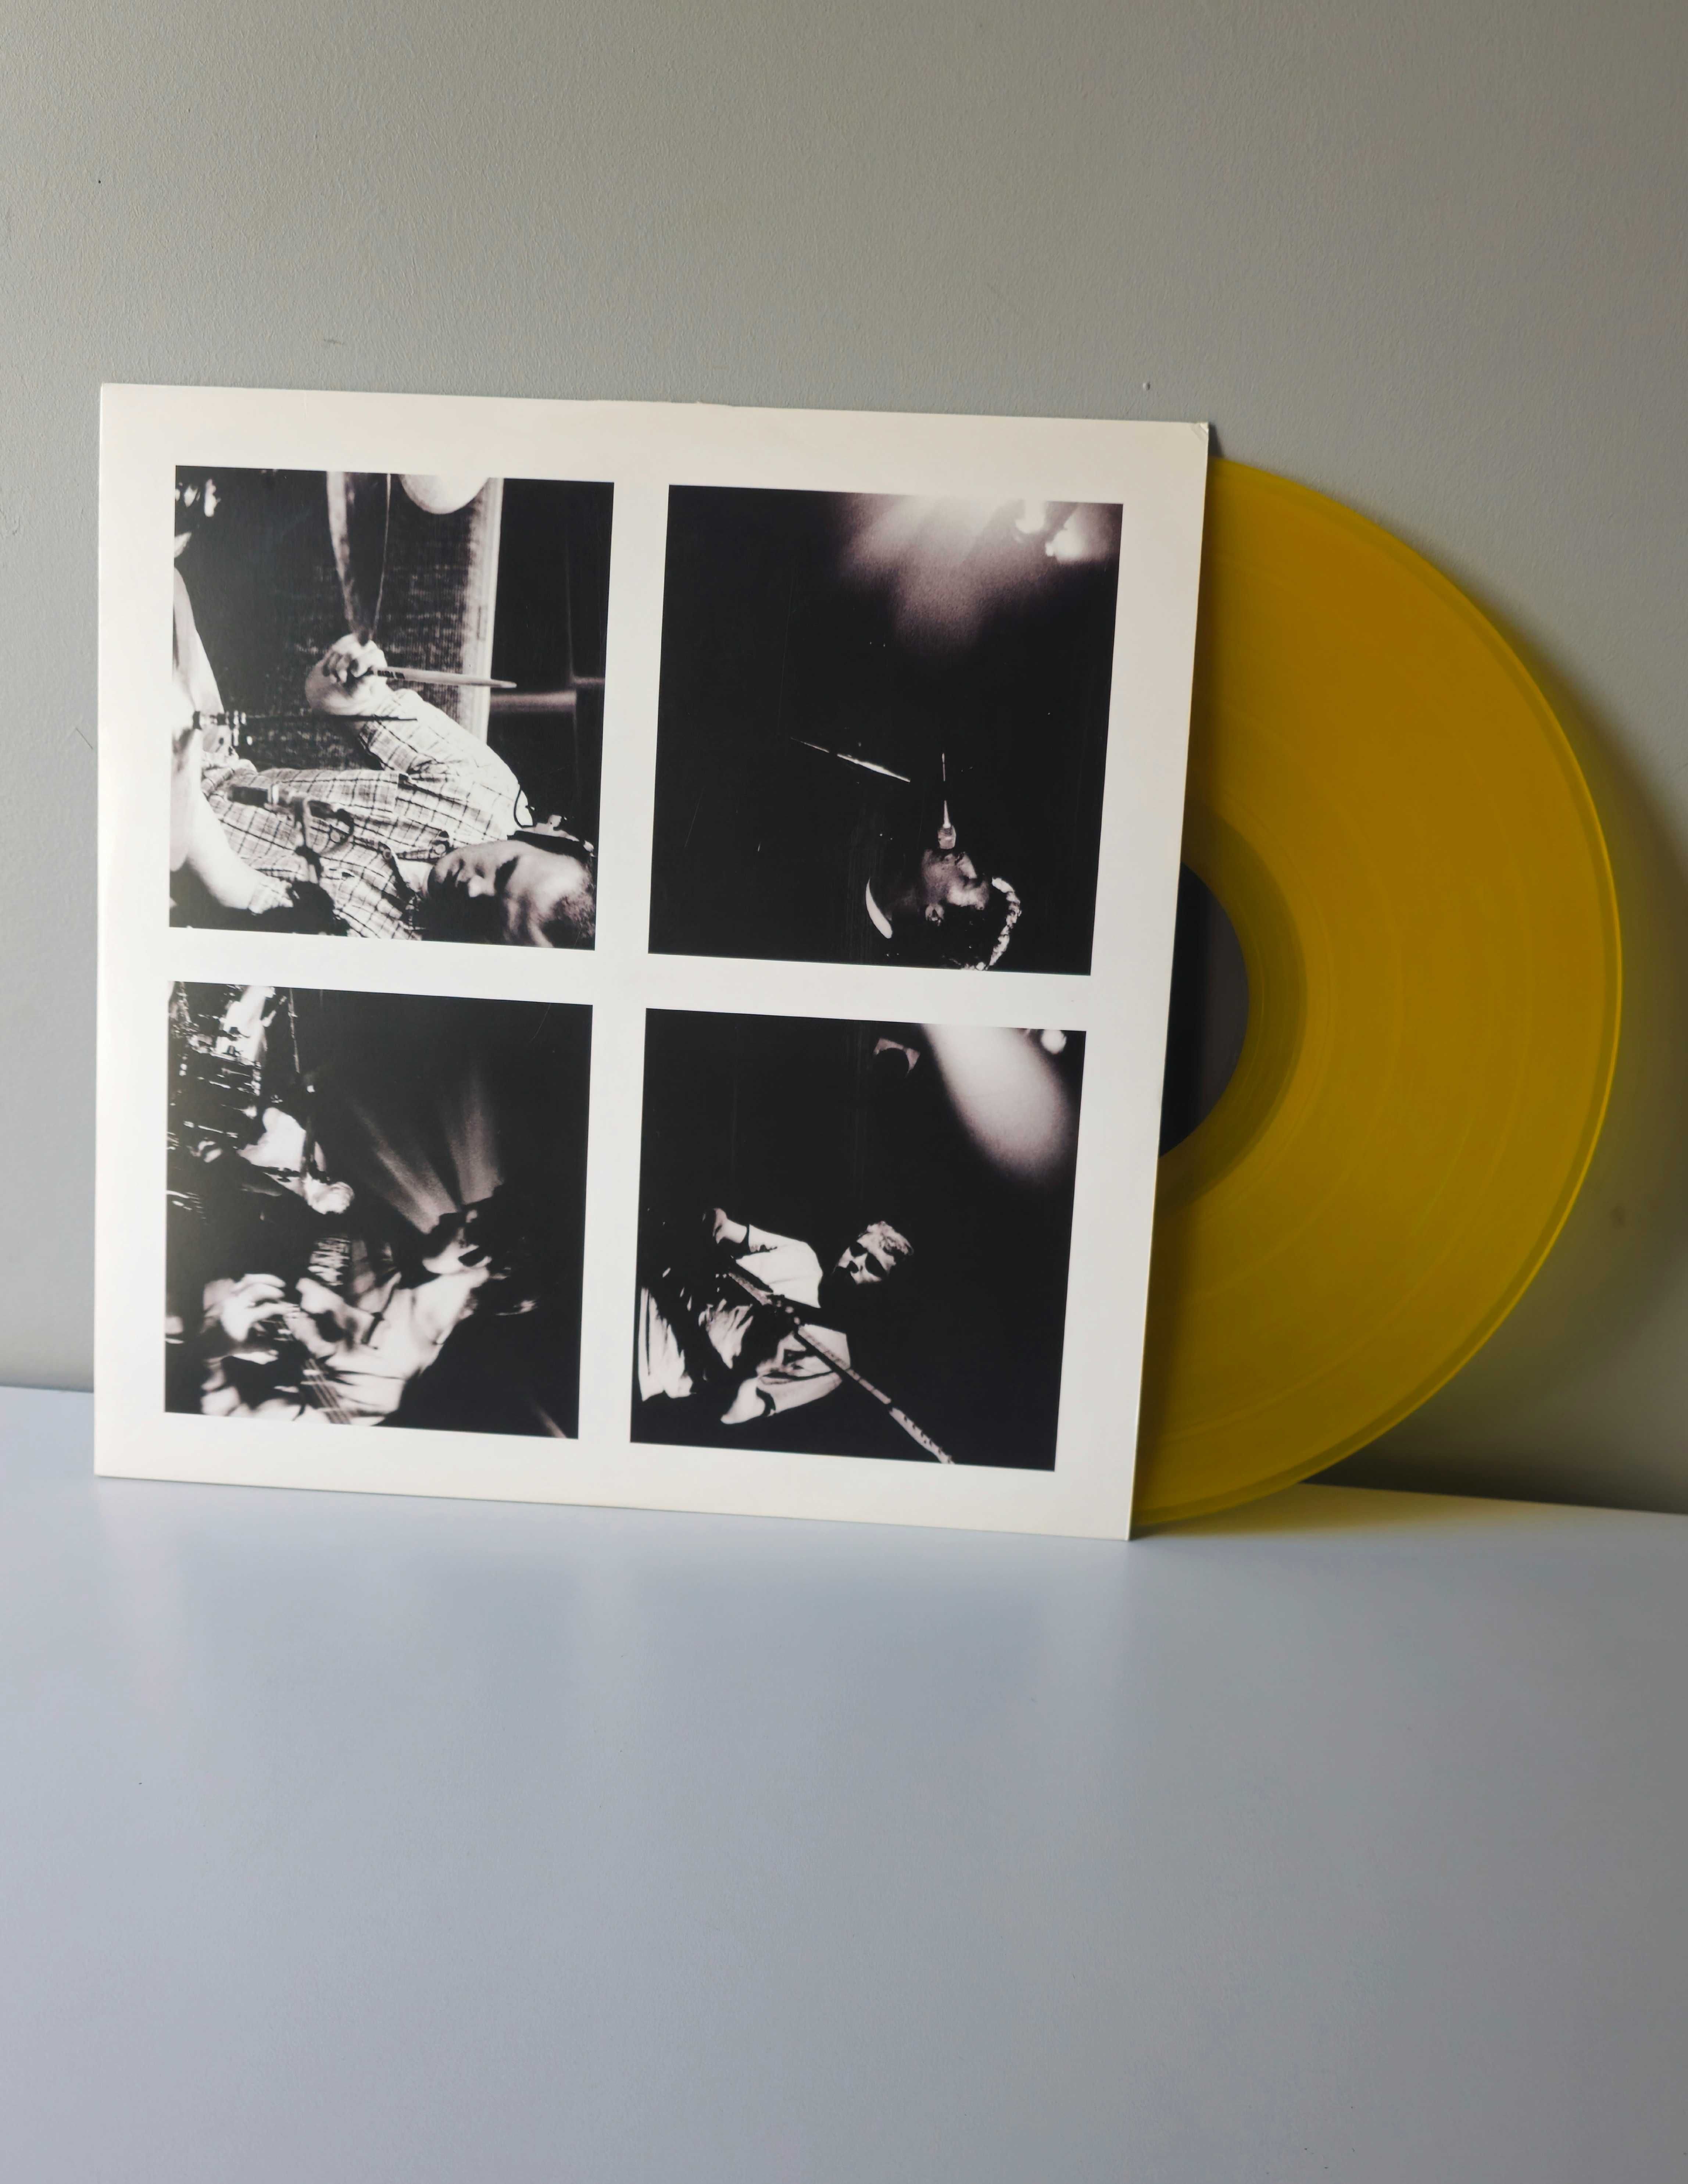 Coldplay - Parachutes - LP limitowany żółty winyl 20th anniversary